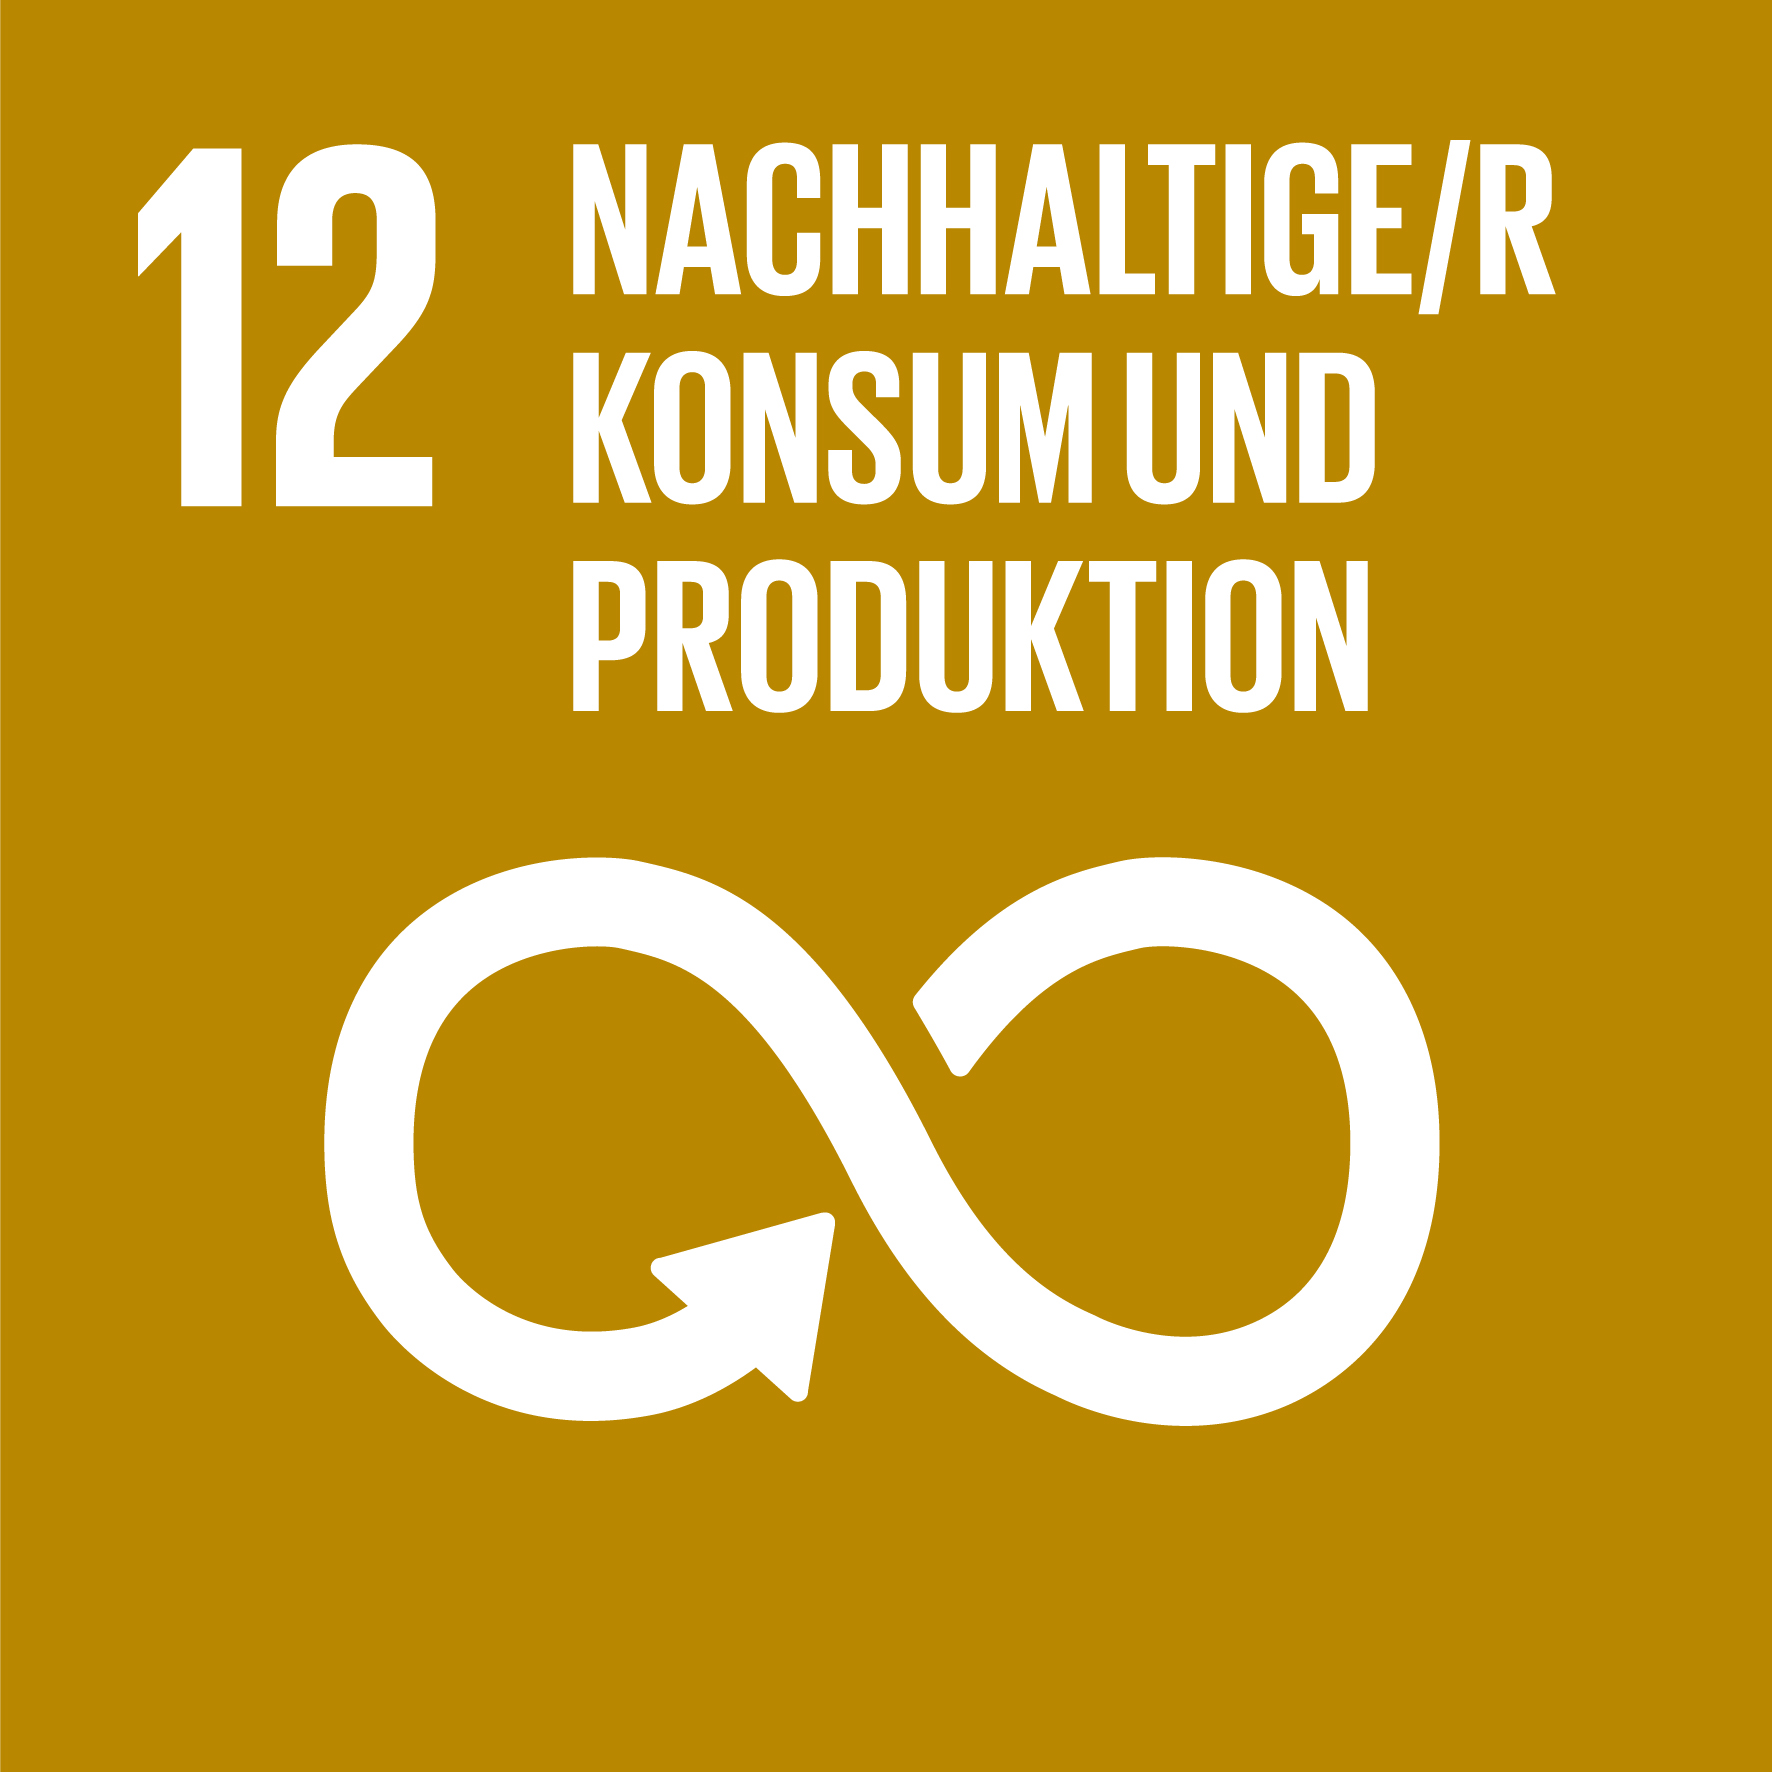 Nachhaltigkeitsziel 12: Nachhaltige/r Konsum und Produktion